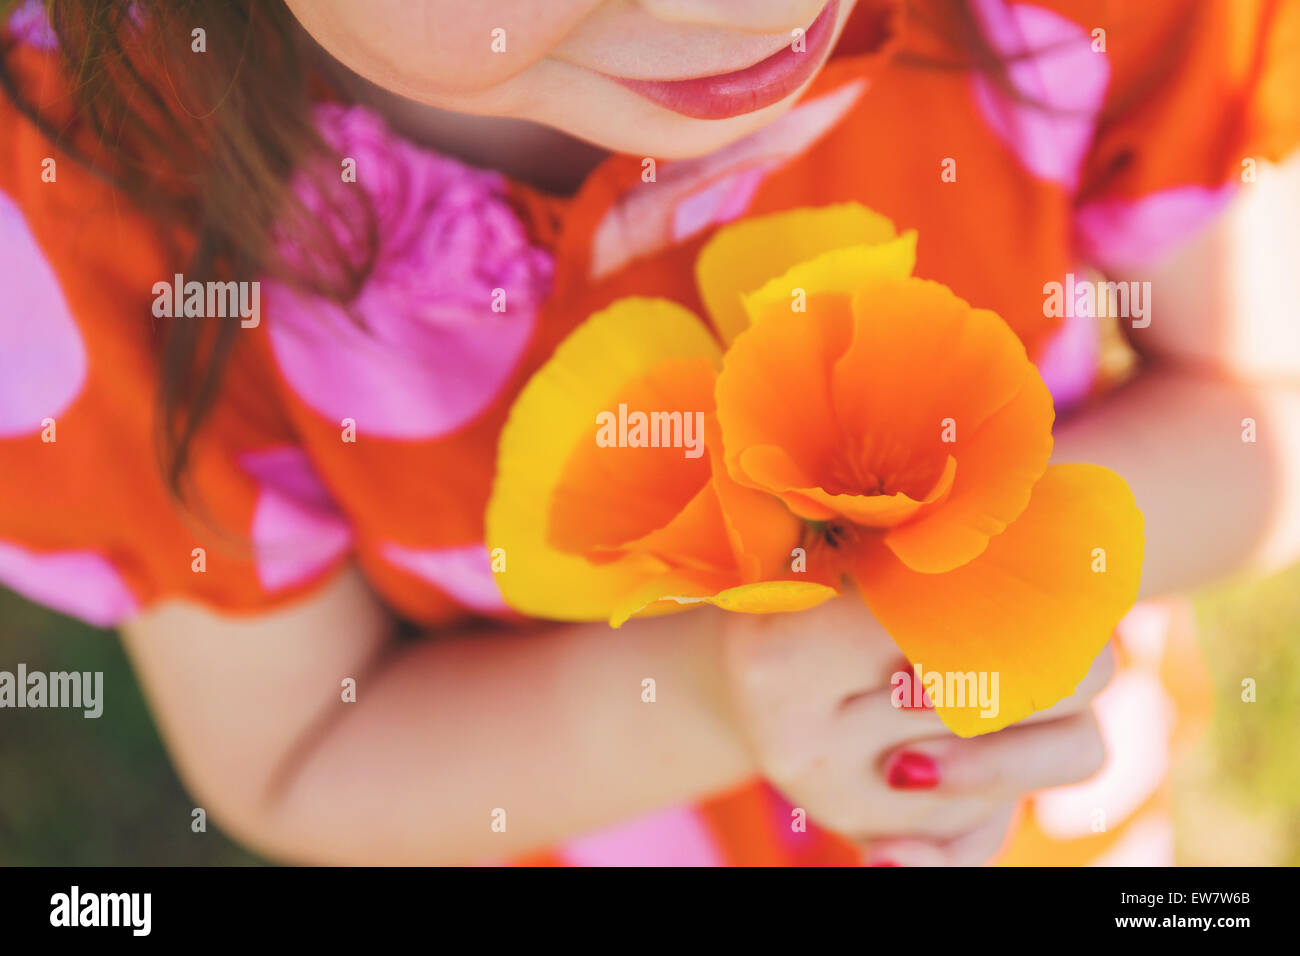 Primo piano di una ragazza che tiene papaveri arancioni Foto Stock